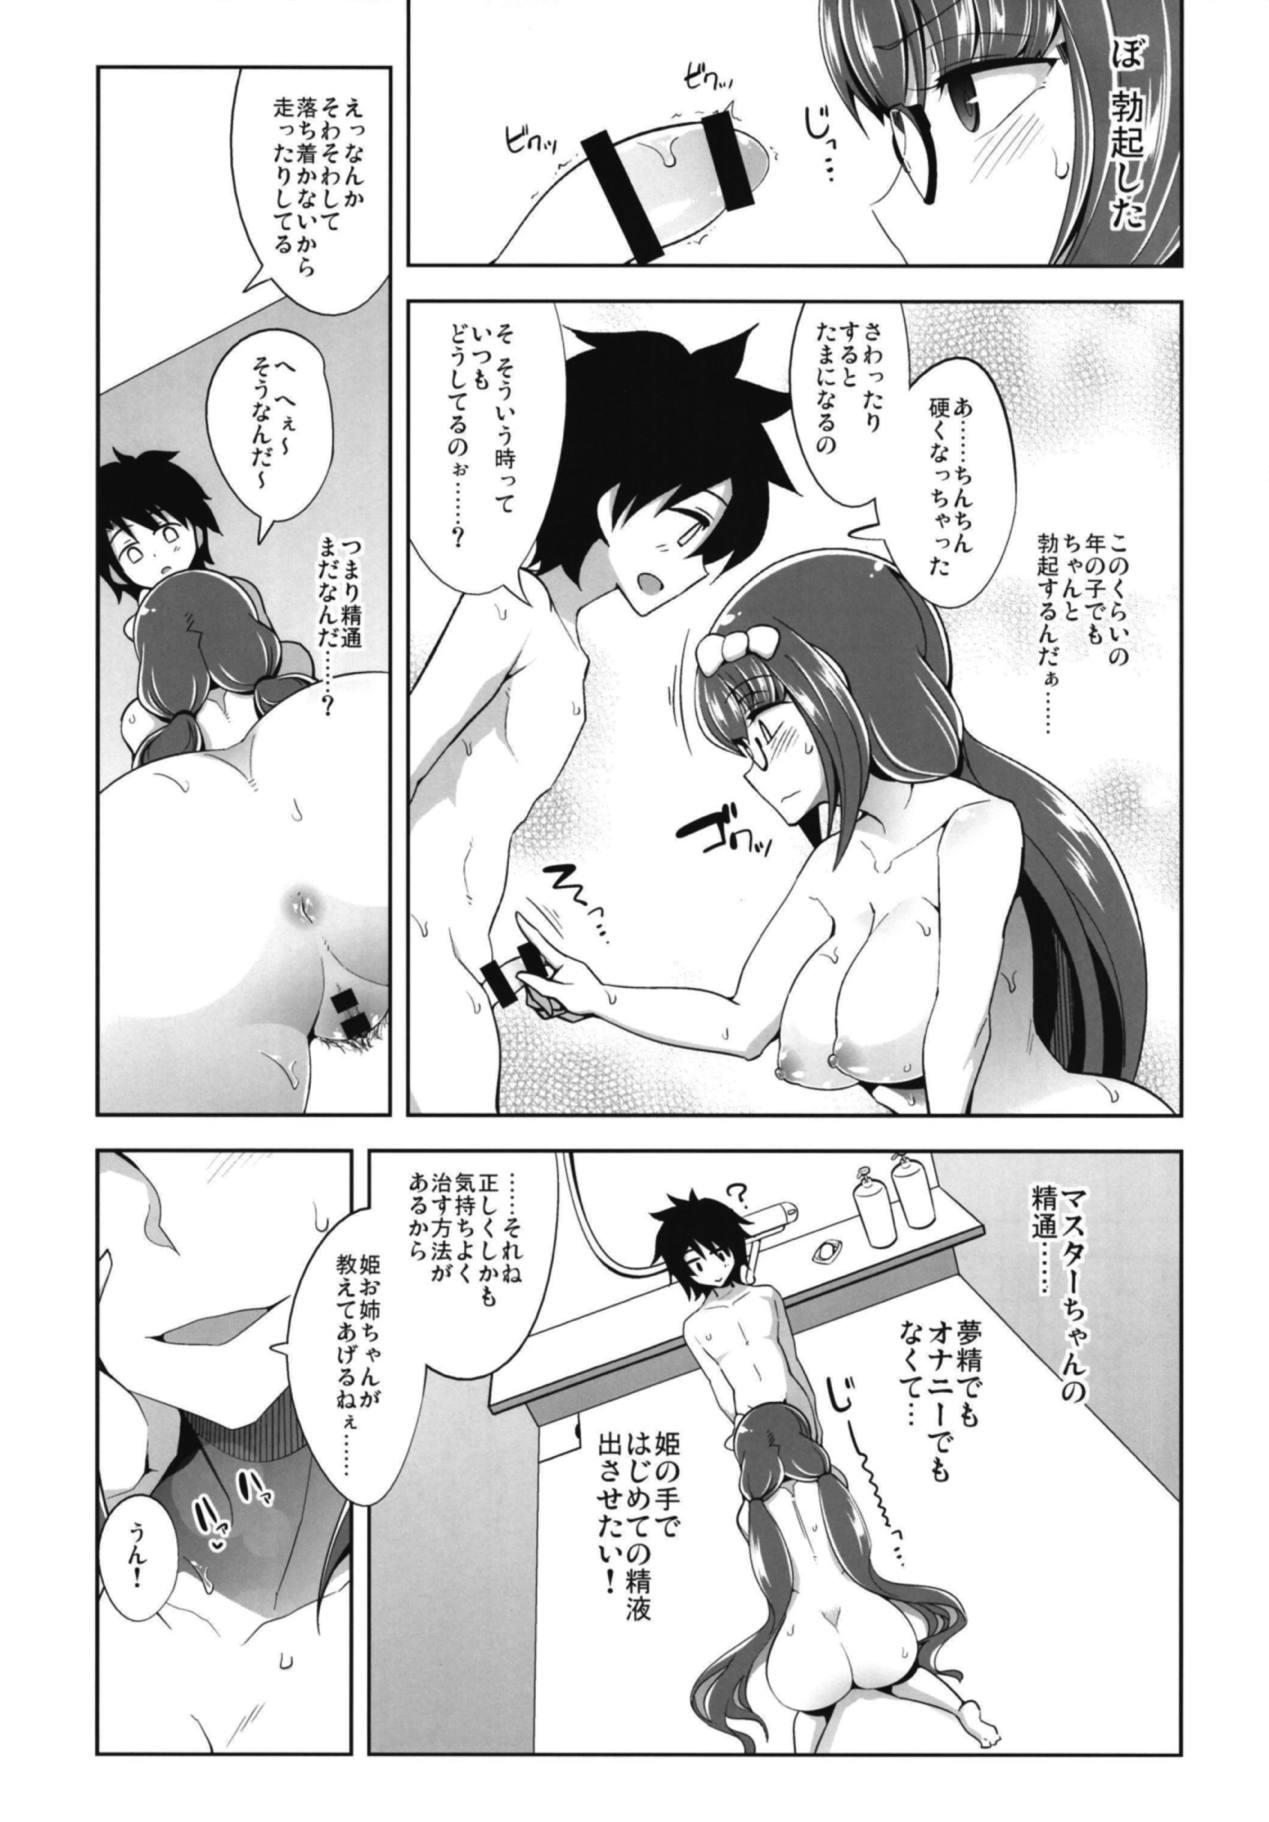 Shesafreak E!? Kono Shota Master-chan no Mendou o Watashi ga? - Fate grand order Porno 18 - Page 8